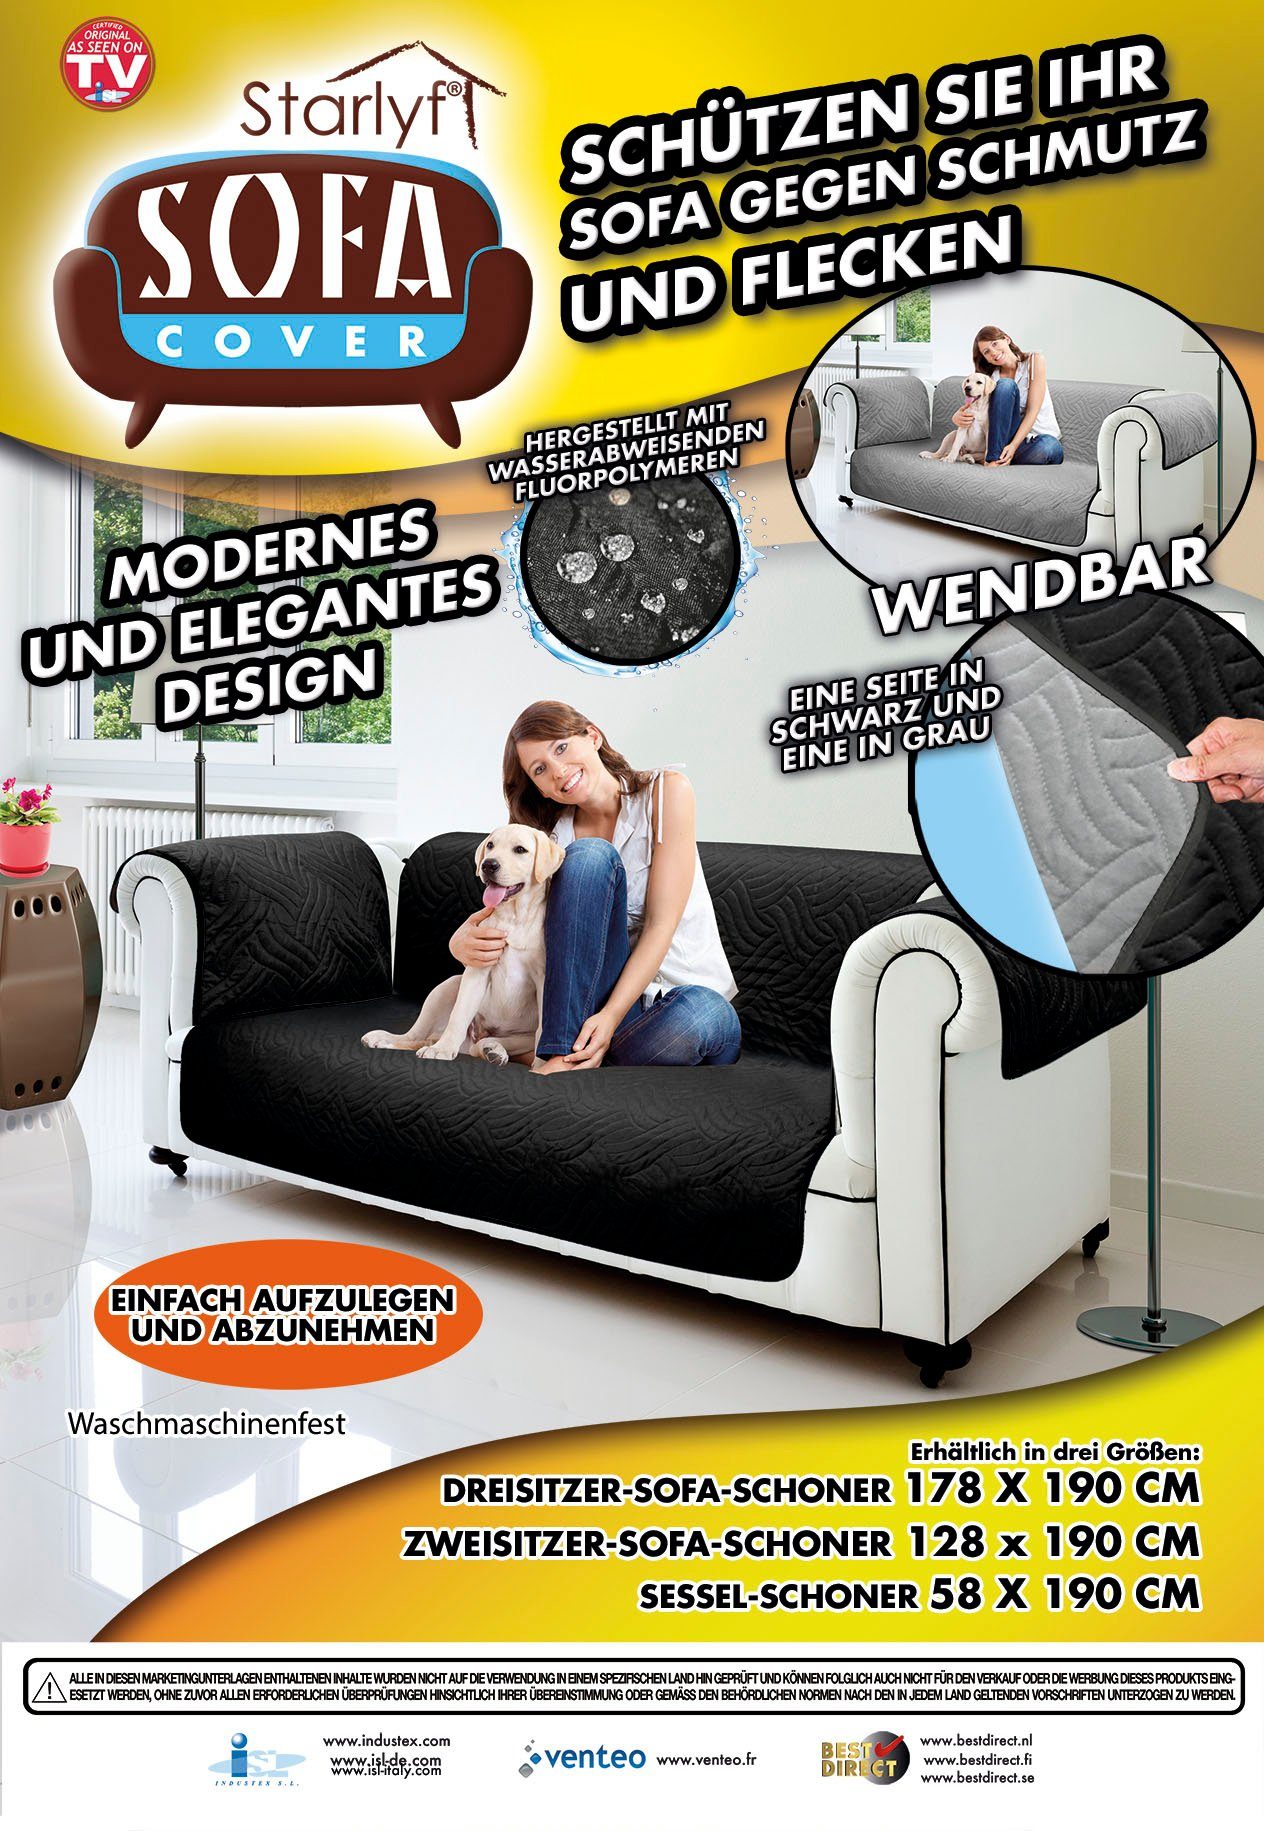 wasserabweisend, Sofaschoner Cover wendbar, Sofabezug Sesselbezug schwarz/grau Starlyf, oder Sofahusse Sofa